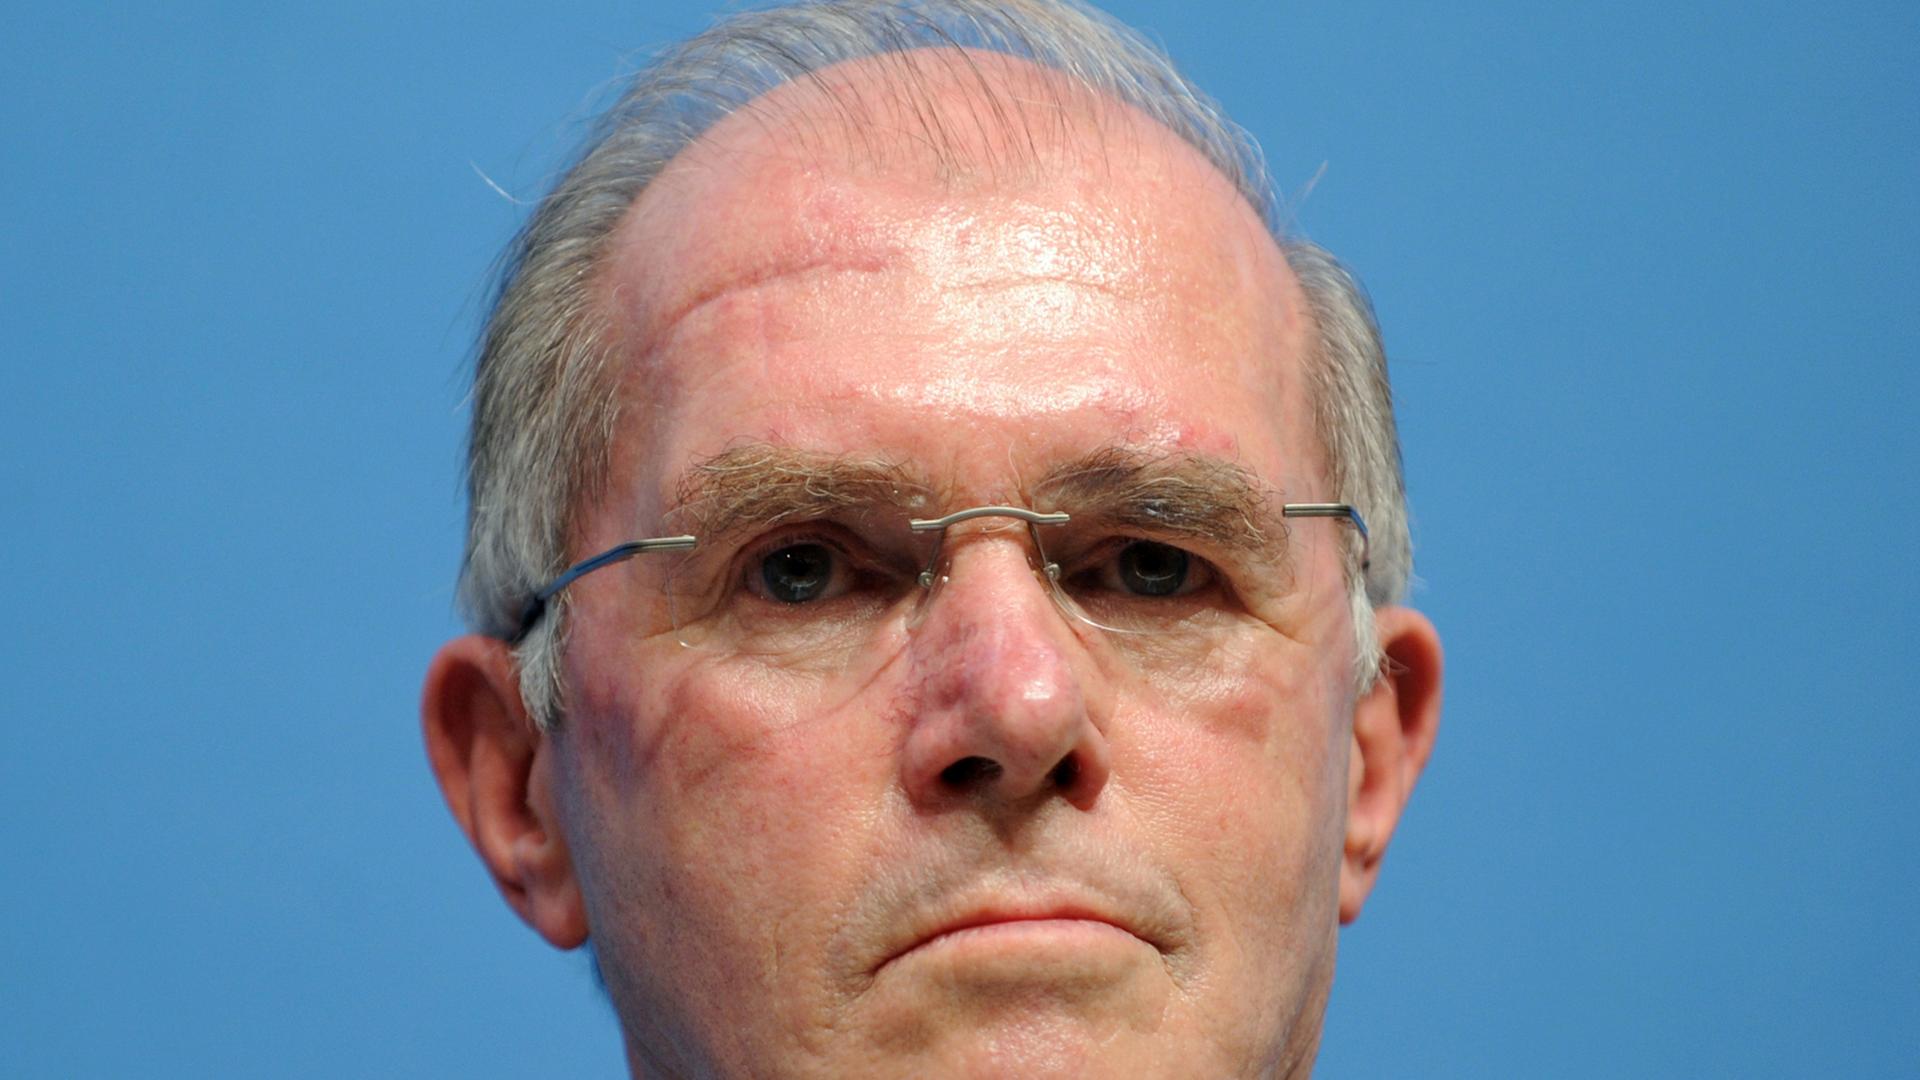 Klaus Naumann, General a.D. und früherer Generalinspekteur der Bundeswehr (Foto vom 11.10.2010)